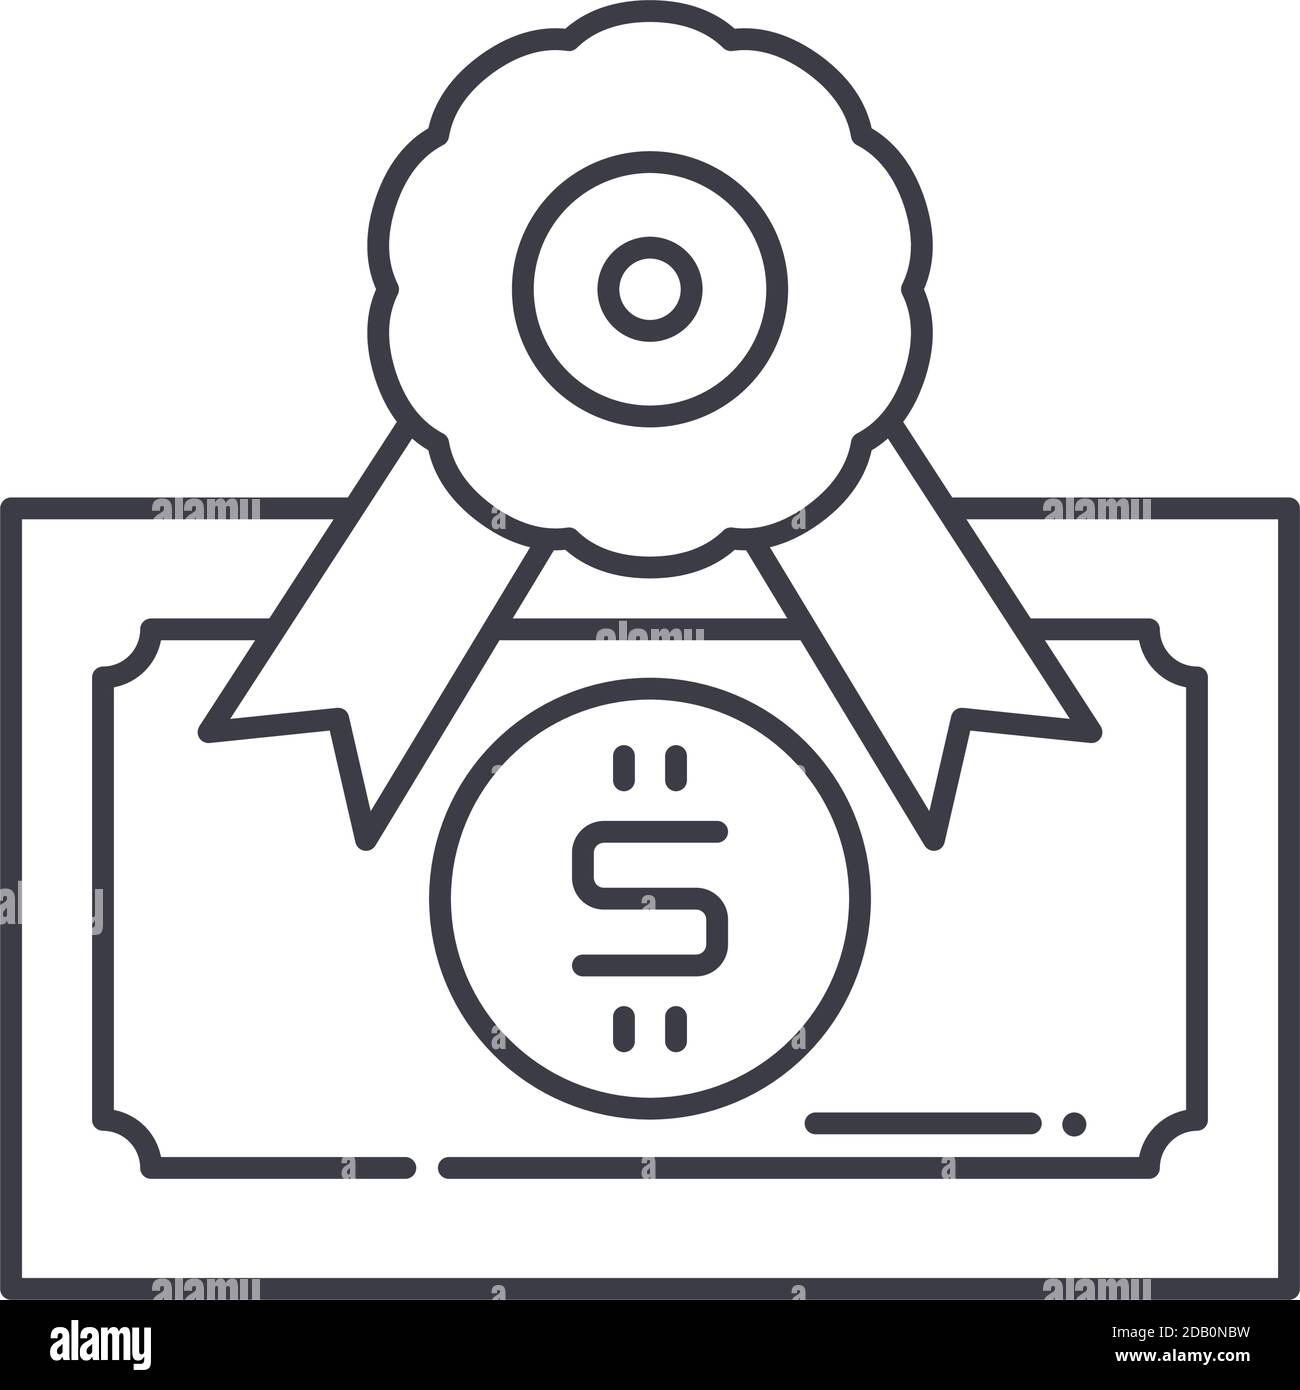 Icona del premio in denaro, illustrazione lineare isolata, vettore di linea sottile, segno di disegno web, simbolo del concetto di contorno con tratto modificabile su sfondo bianco. Illustrazione Vettoriale